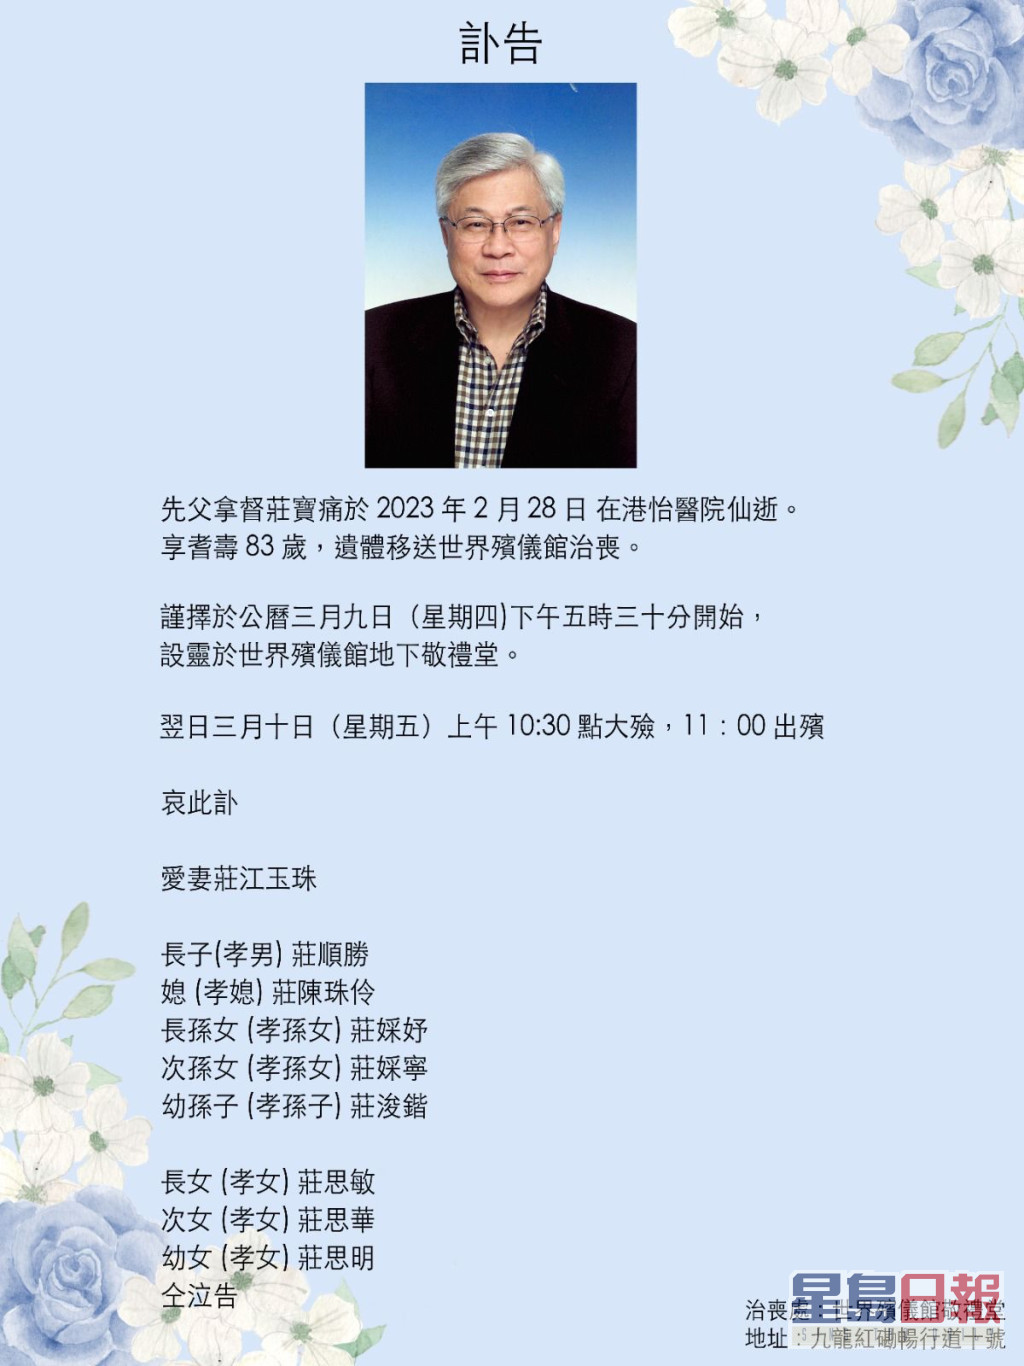 庄锶敏与庄思明的父亲于2月28日离世。